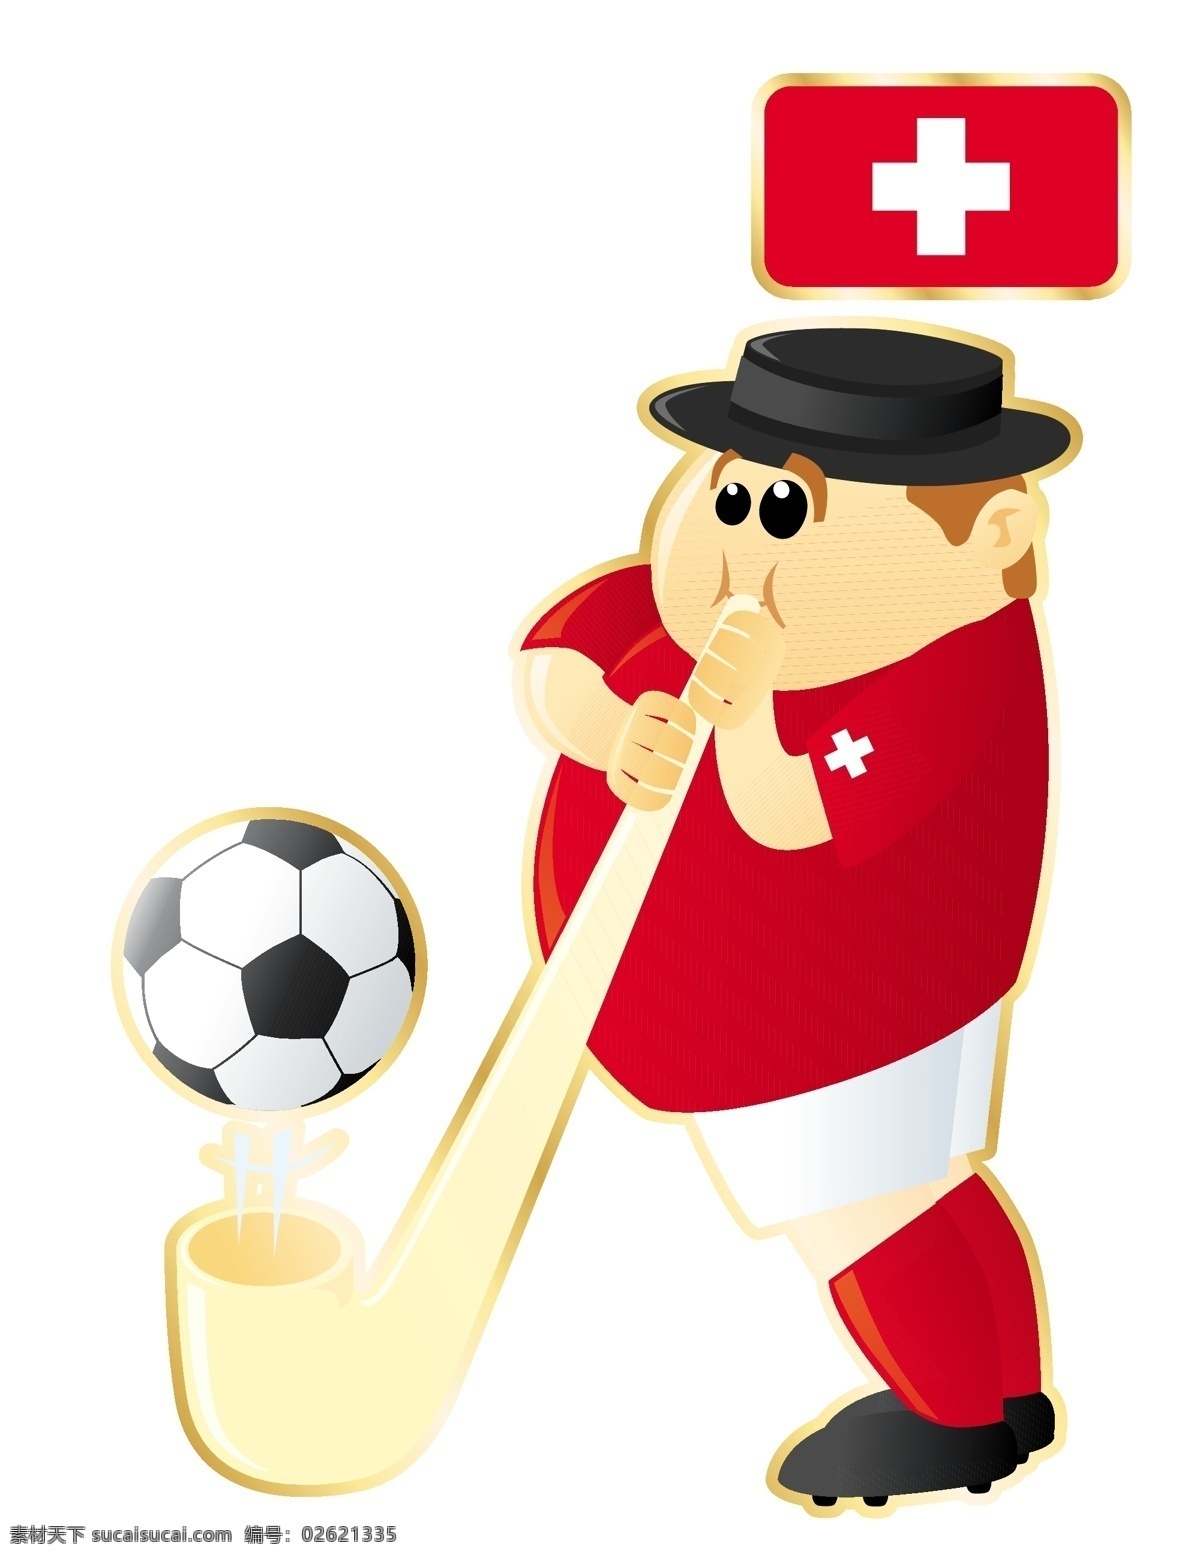 搞笑 足球 卡通 人物 形象 矢量图 红色 十字 运动员 大胖子 运动 踢球 外国 矢量 扁平化 平面